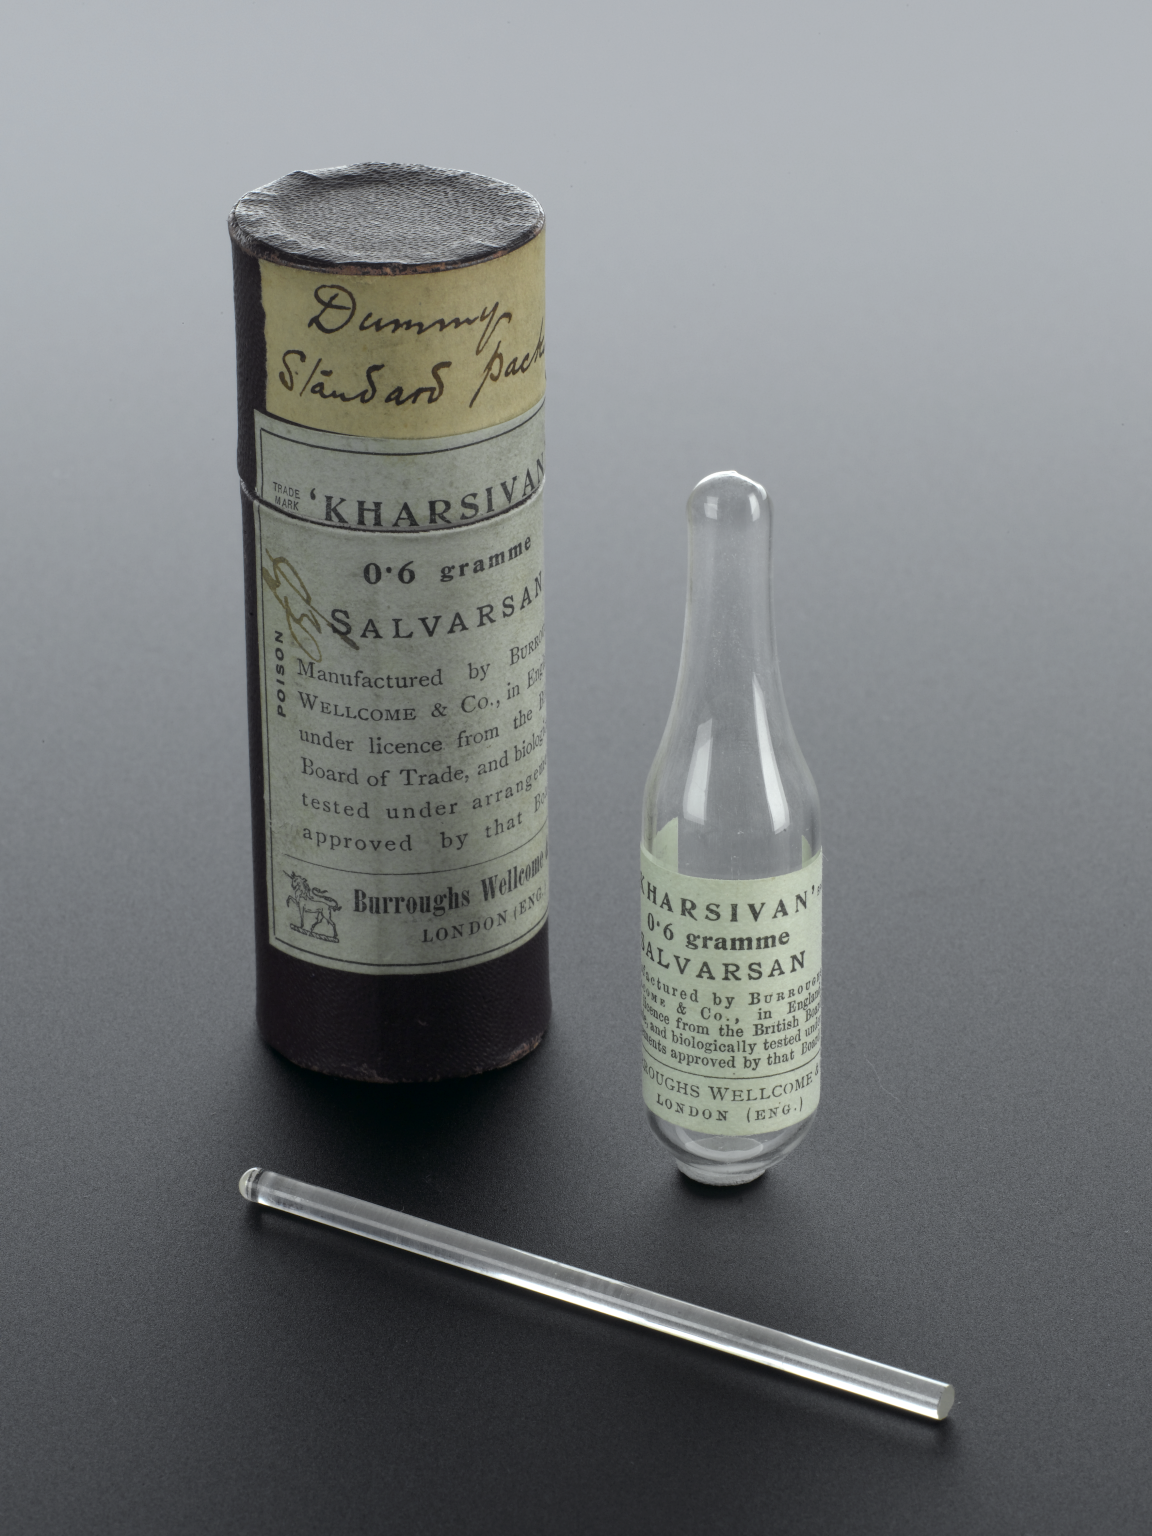 Foto de uma garrafa de vidro de Salvarsan com rótulo, ao lado da embalagem do produto em formato cilíndrico, e um bastão de vidro com ponta polida.